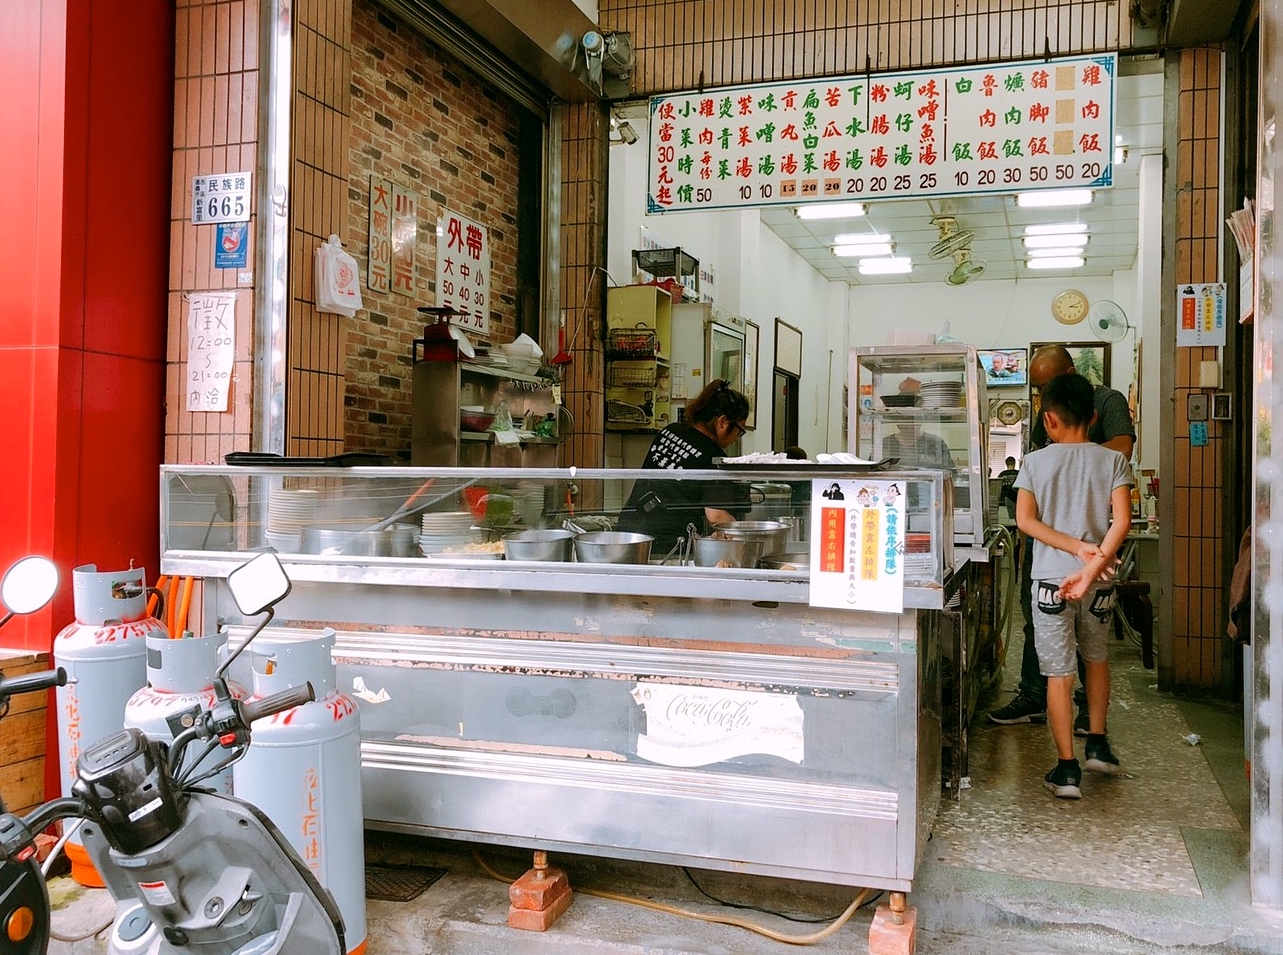 【嘉義 呆獅雞肉飯】傳承三代一甲子老店。銅板菜單點一桌不到150元?